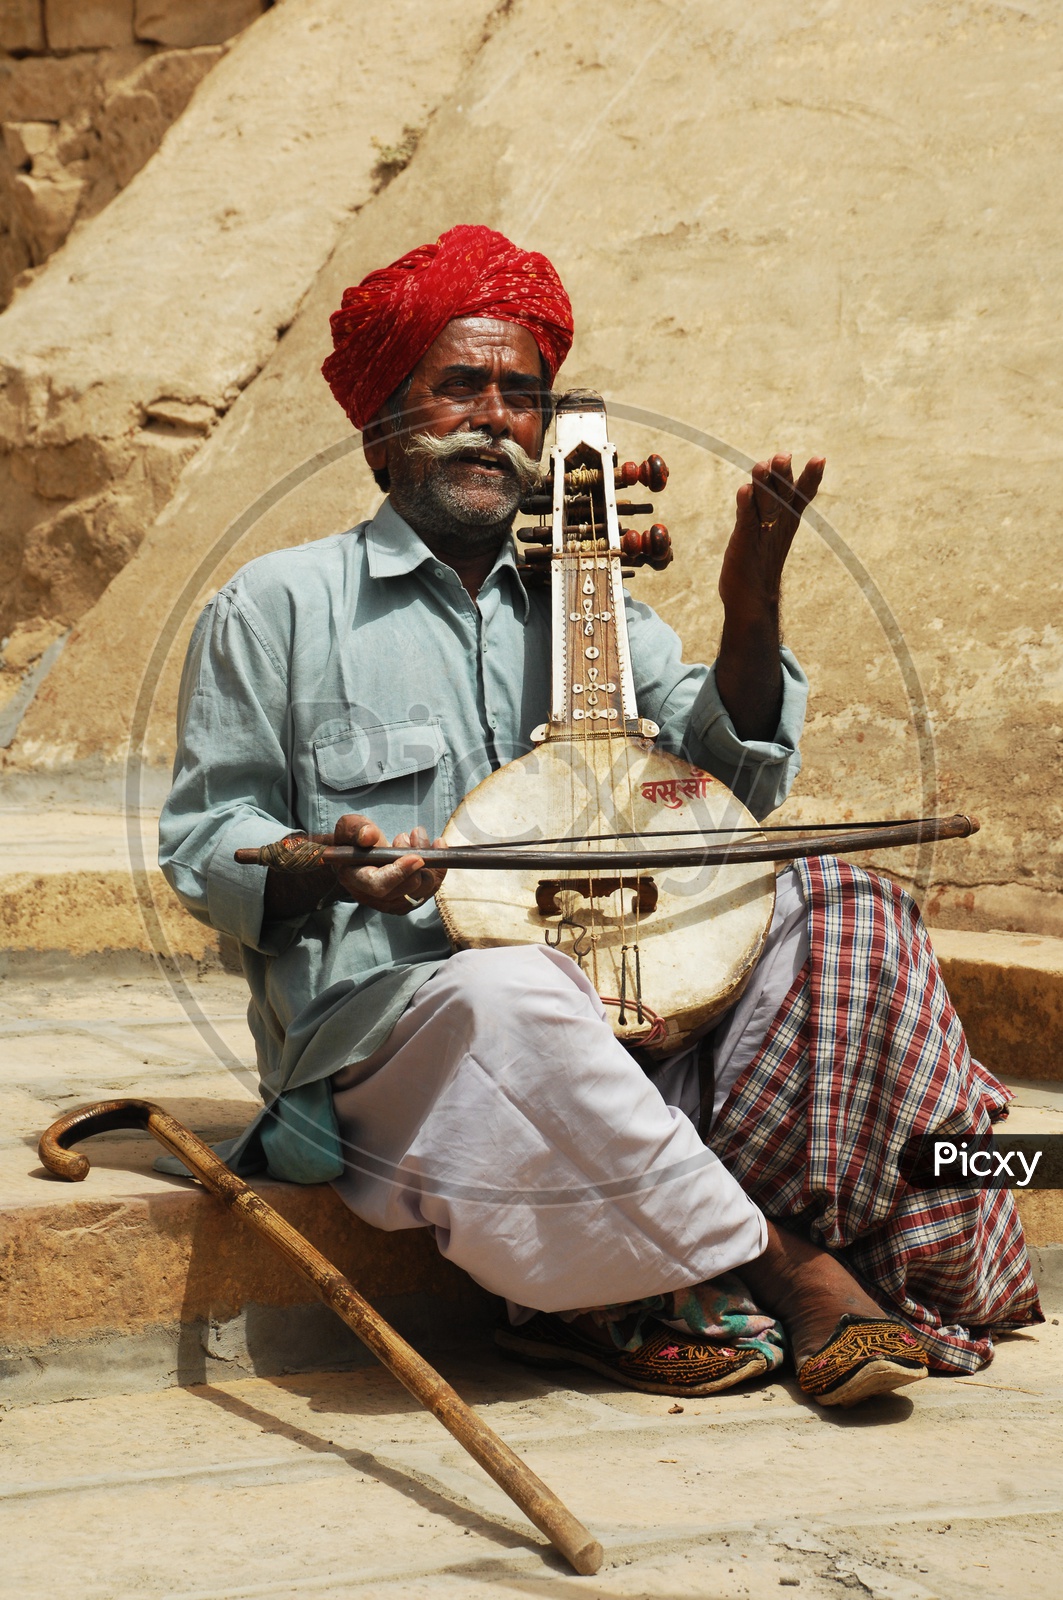 Rajasthani Men playing musical instrument